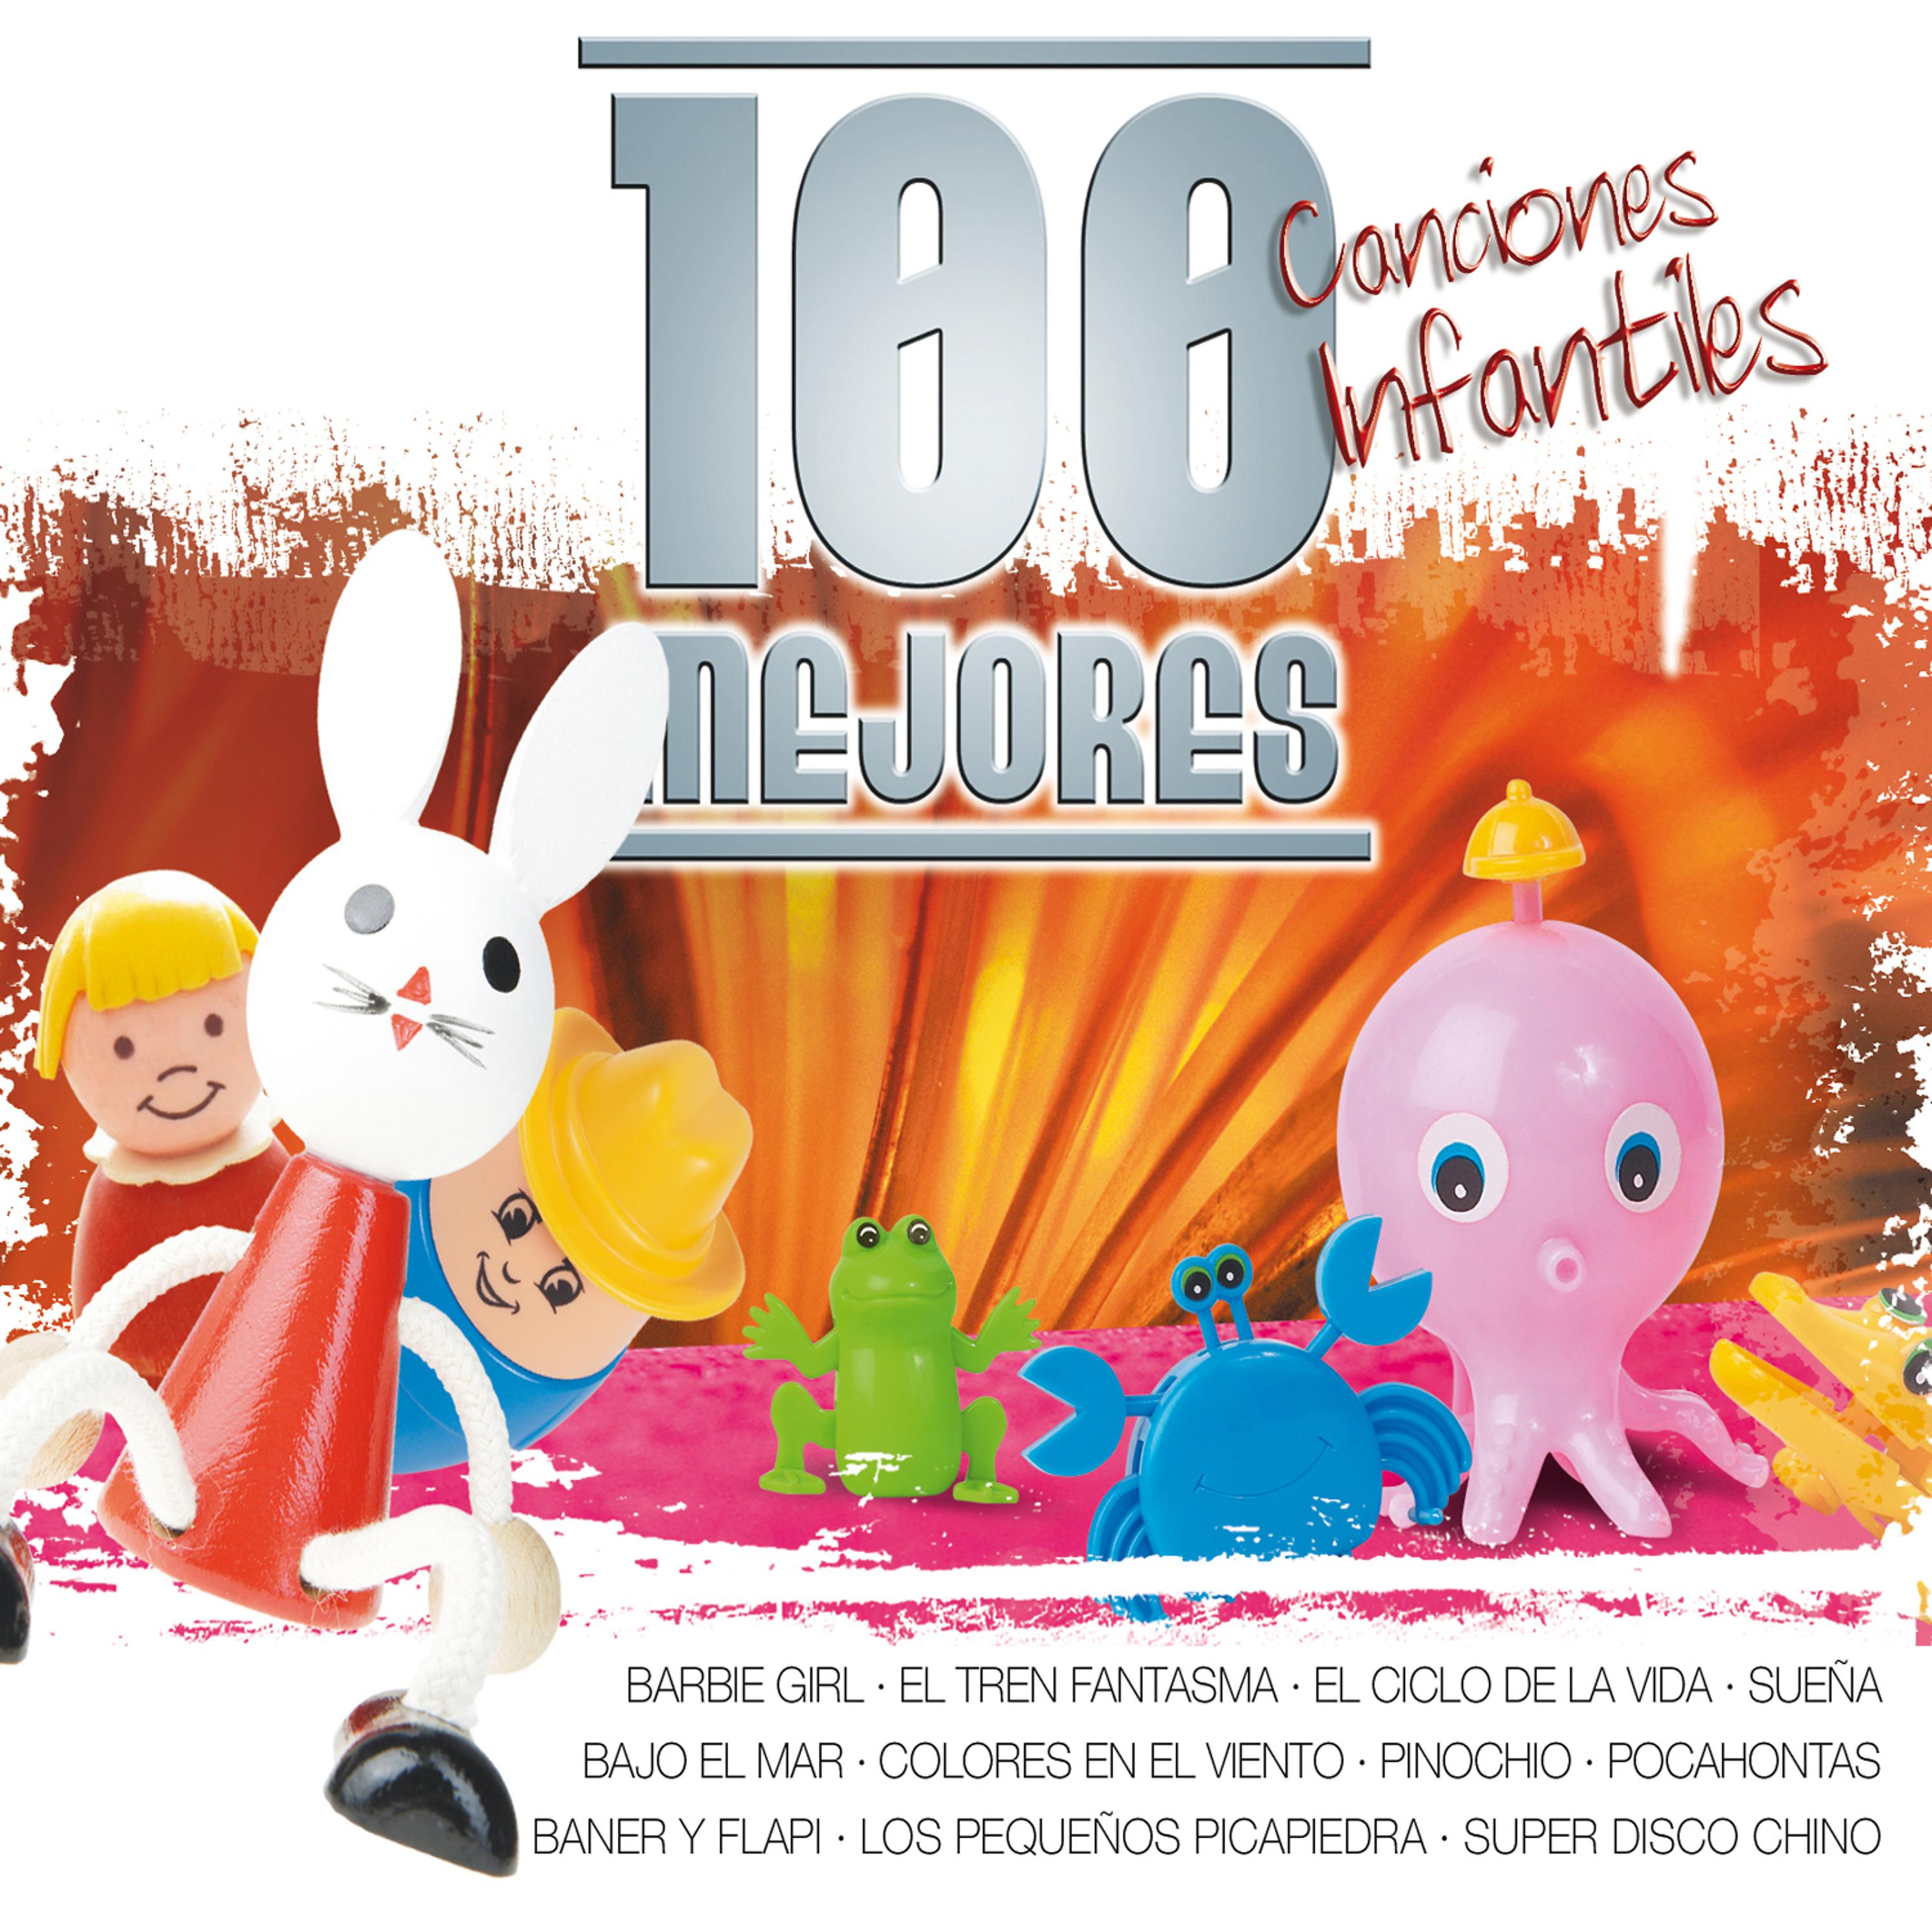 Постер альбома Las 100 Mejores Canciones Infantiles